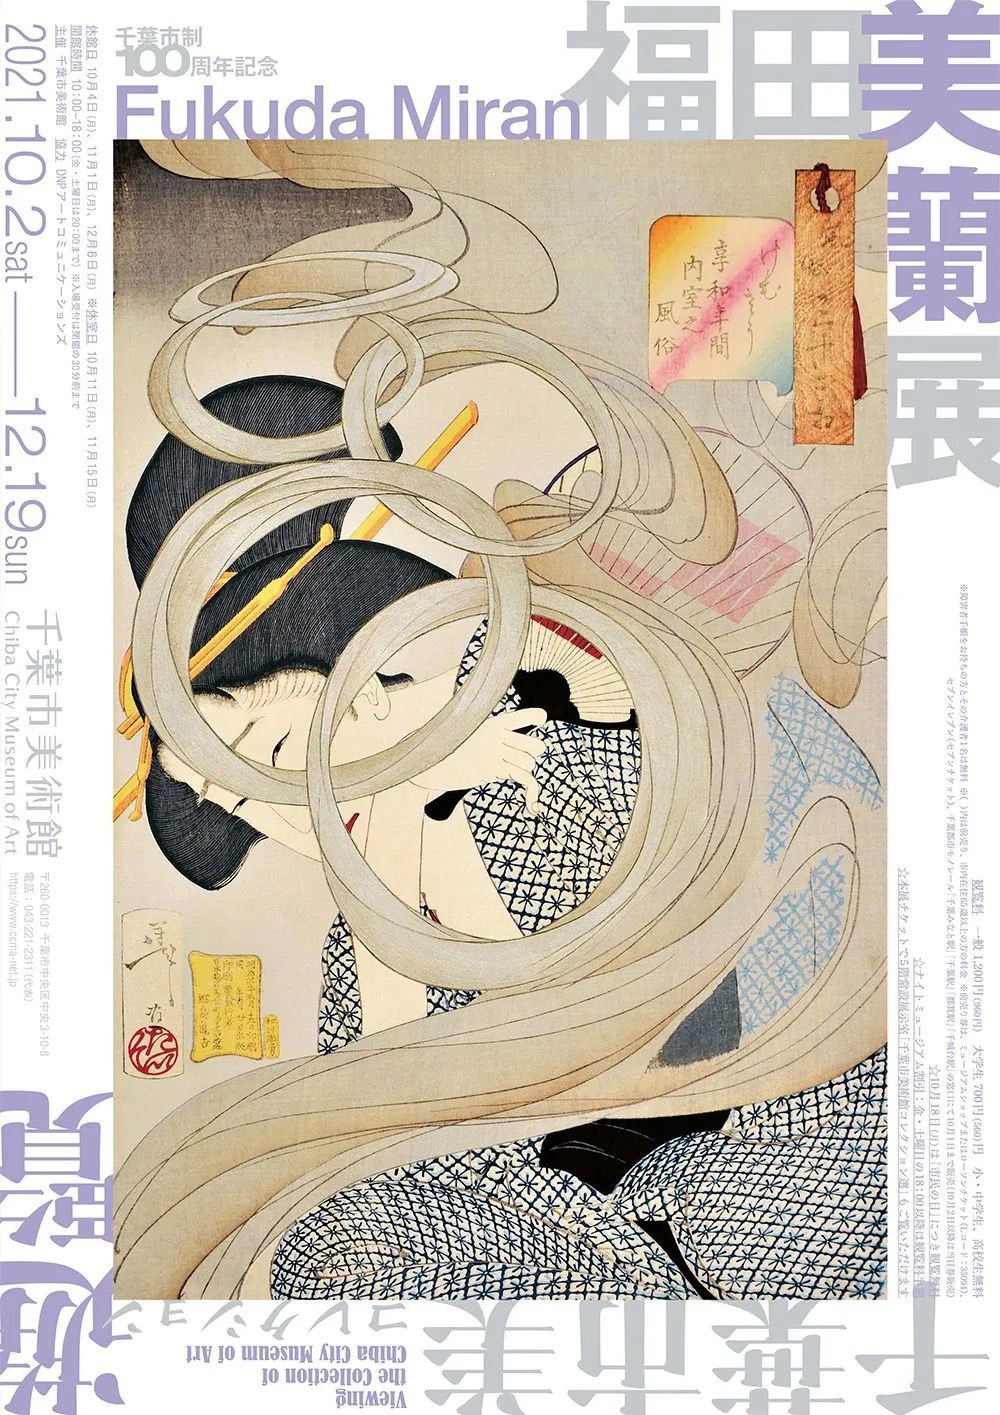 15张日本展览海报设计欣赏